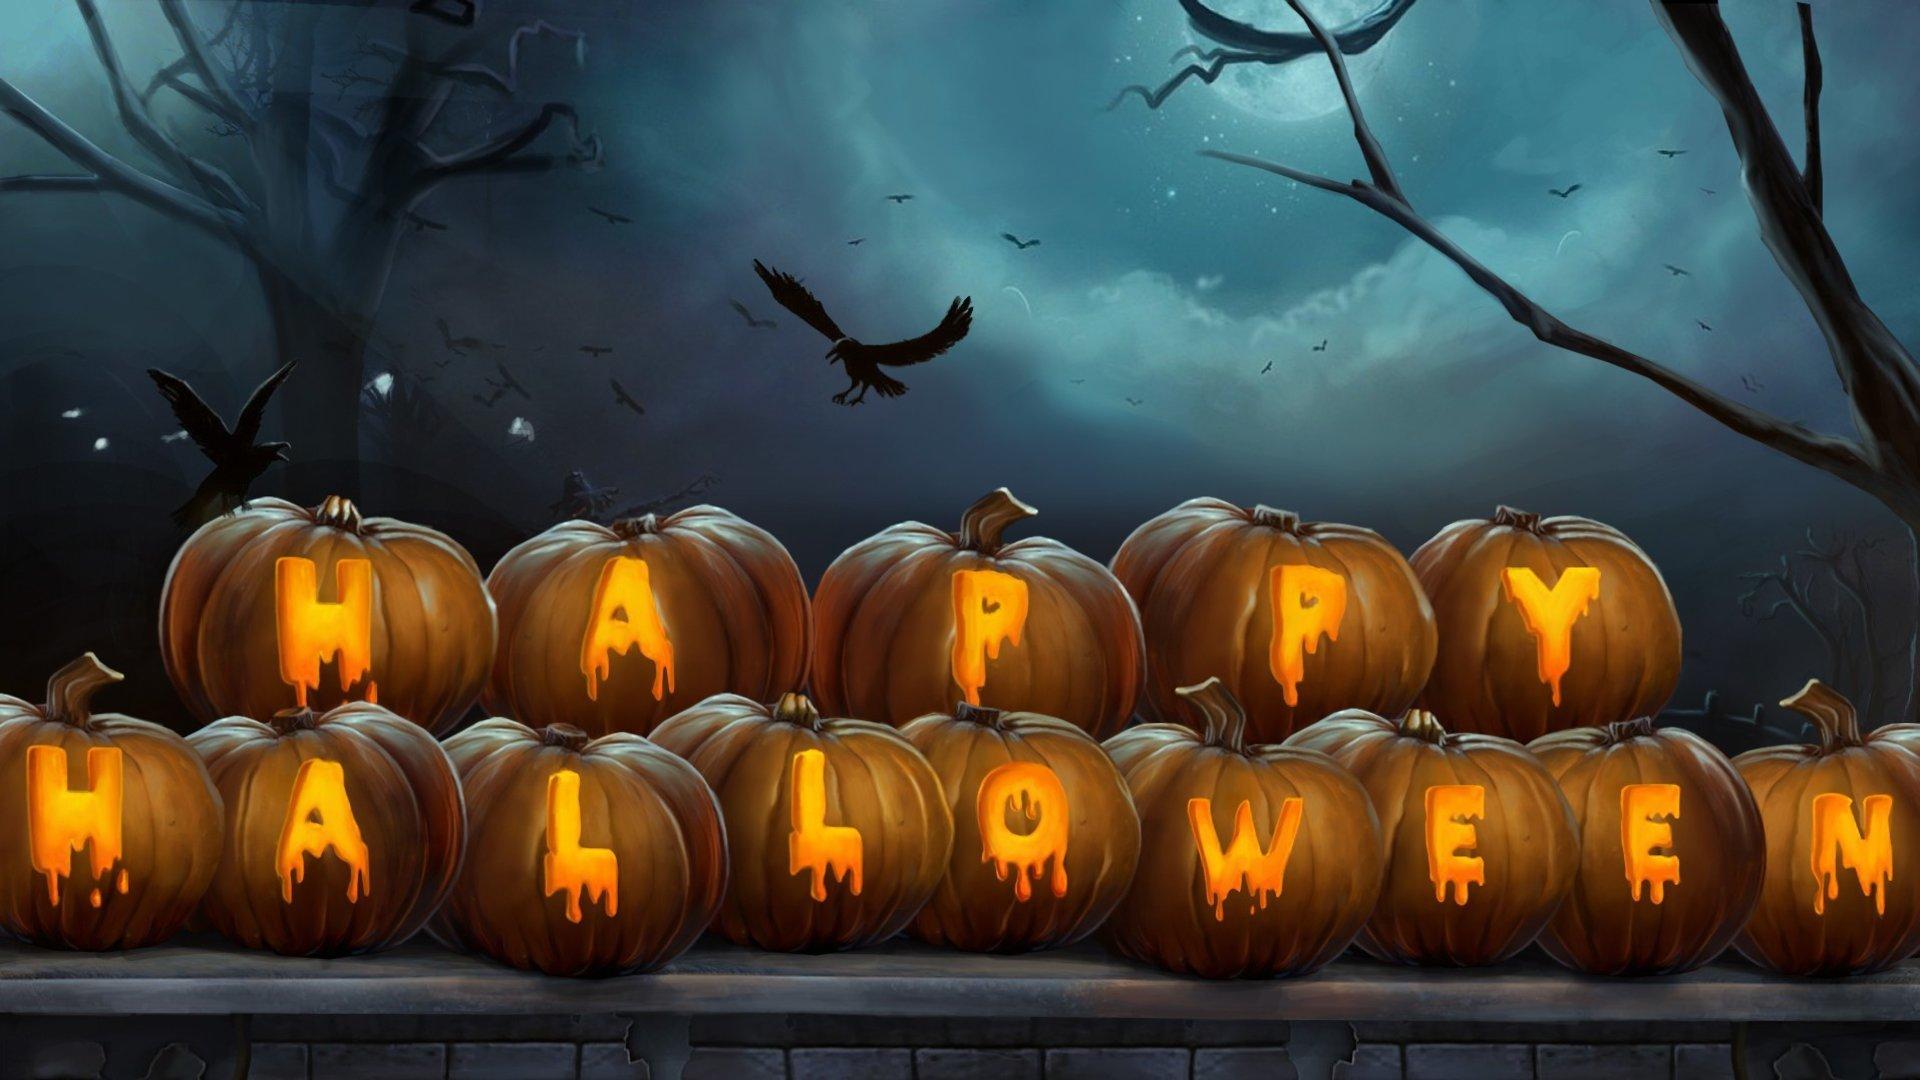 Happy Halloween wallpaper HD for desktop background